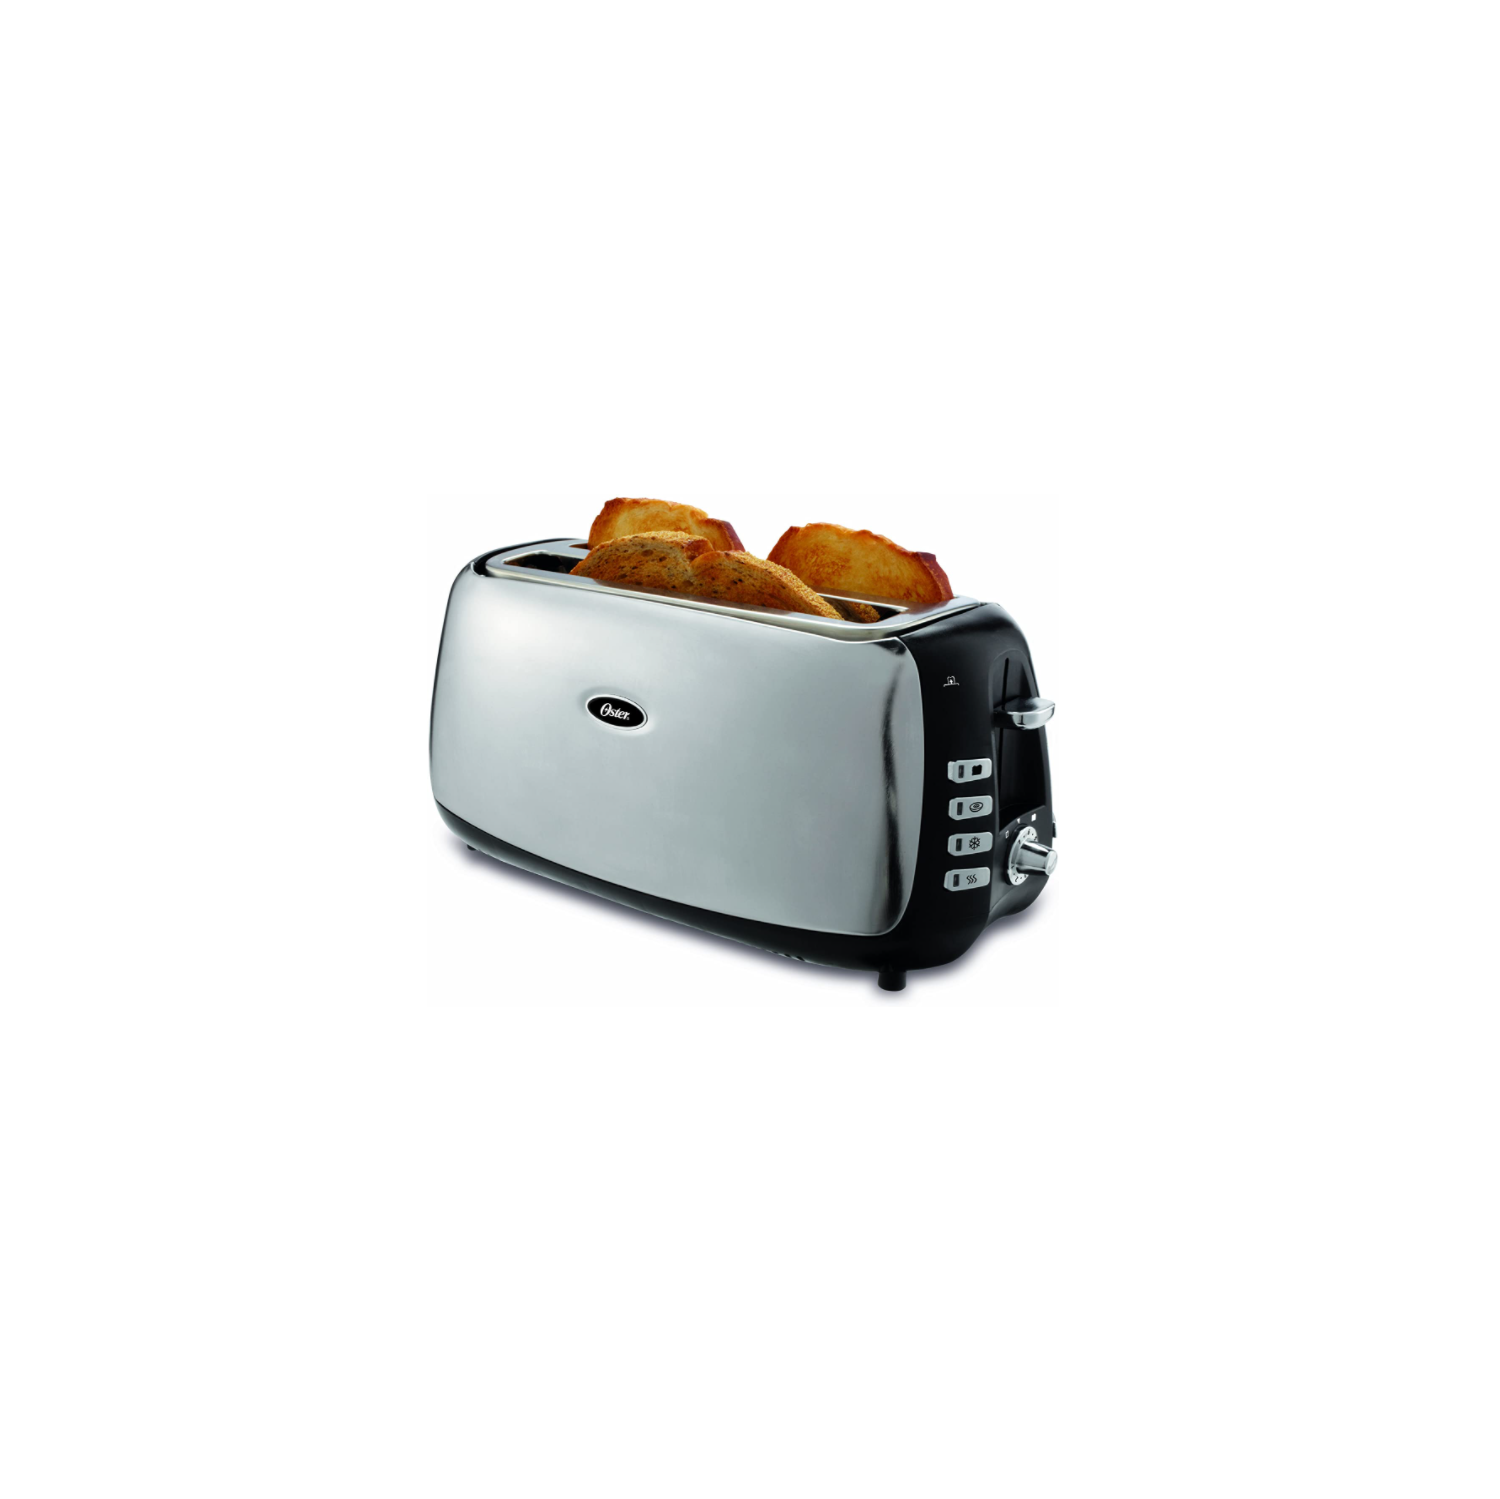 Oster 4 Slice Long Slot Toaster, Polished Stainless Steel - TSSTJCPS01-033